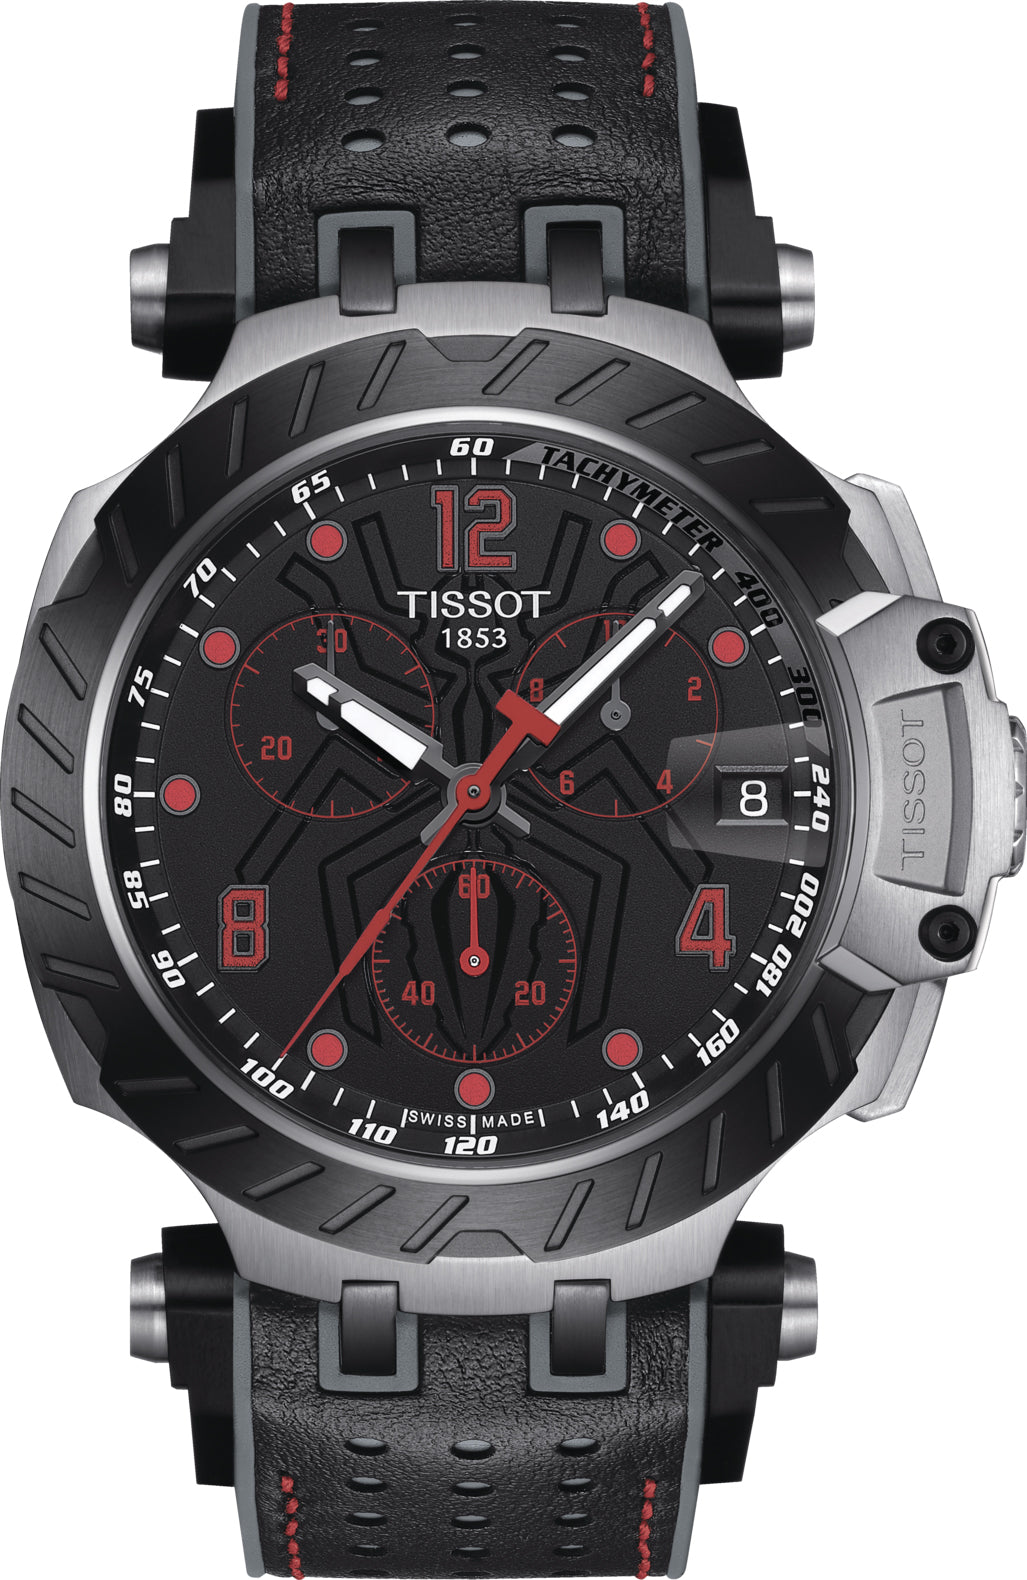 Tissot Watch T-race Motogp Marc Marquez Limited Edition 2020